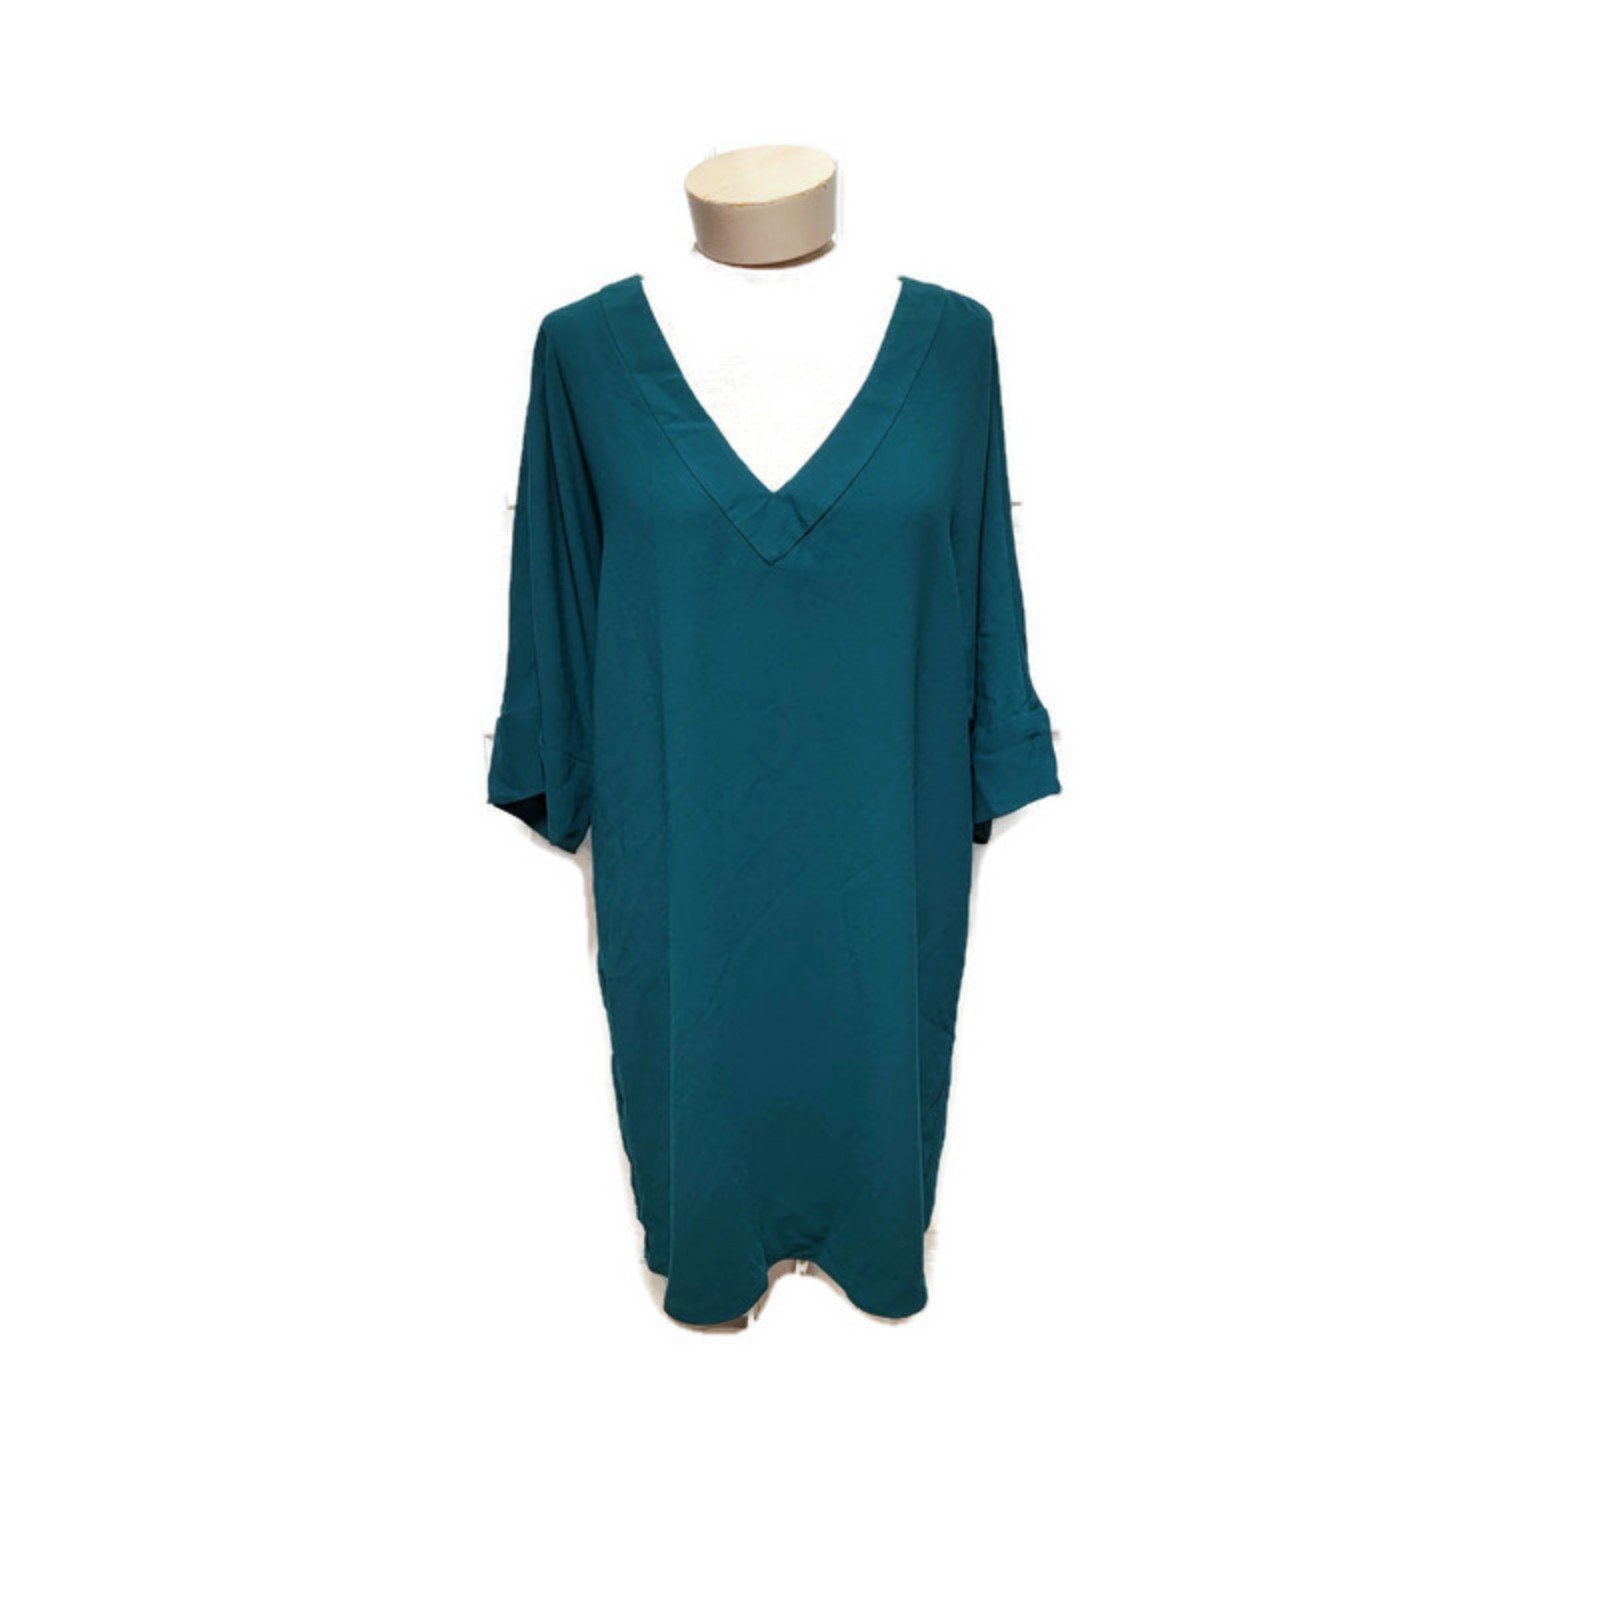 Wholesale price New Trina Turk Dellia Green Dress Size 